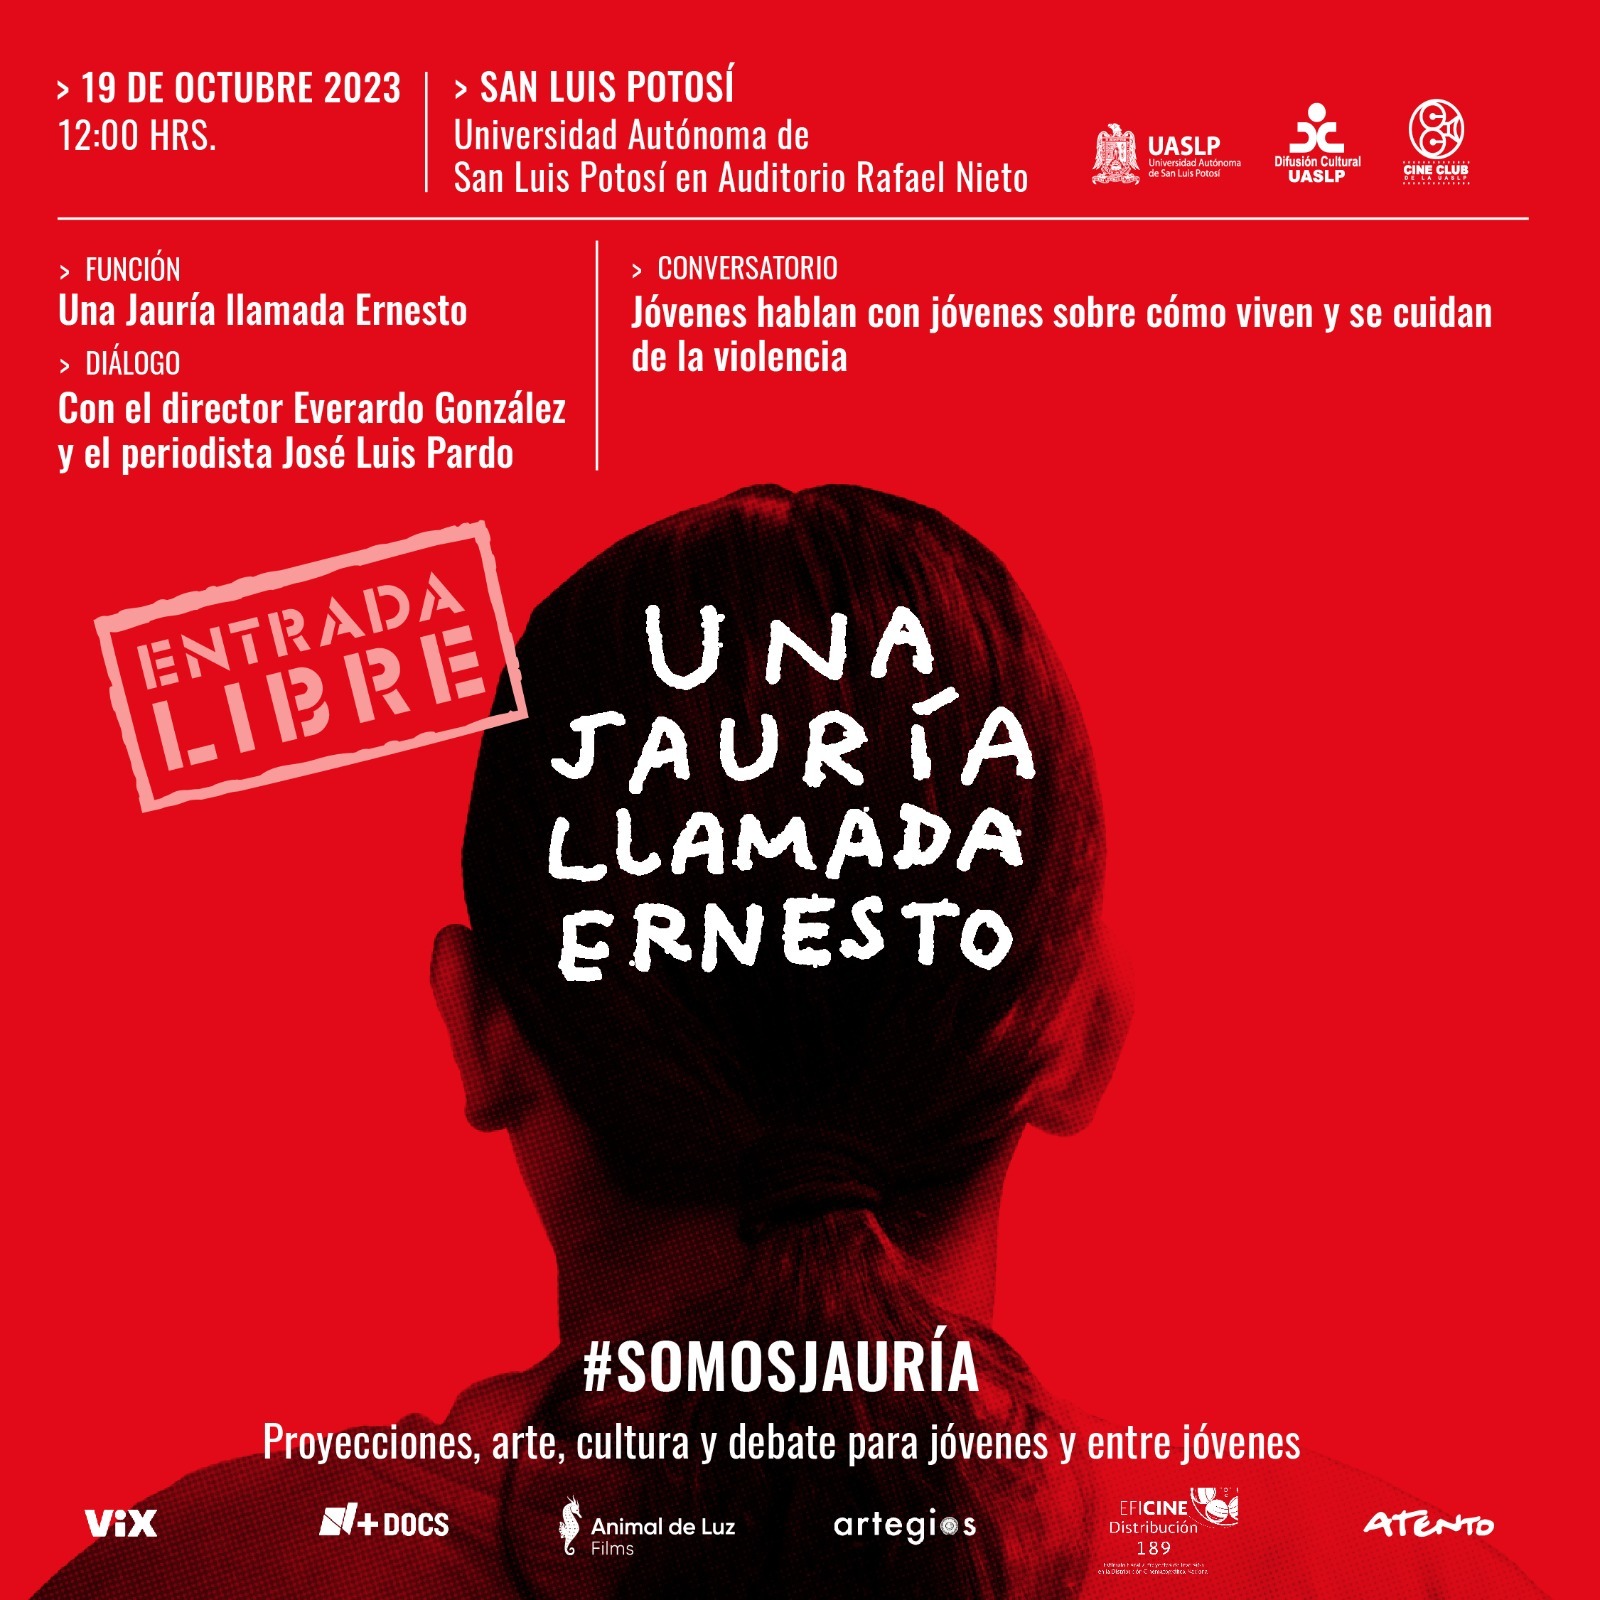 La Universidad Autónoma de San Luis Potosí, invita a la proyección del documental “Una jauría llamada Ernesto”